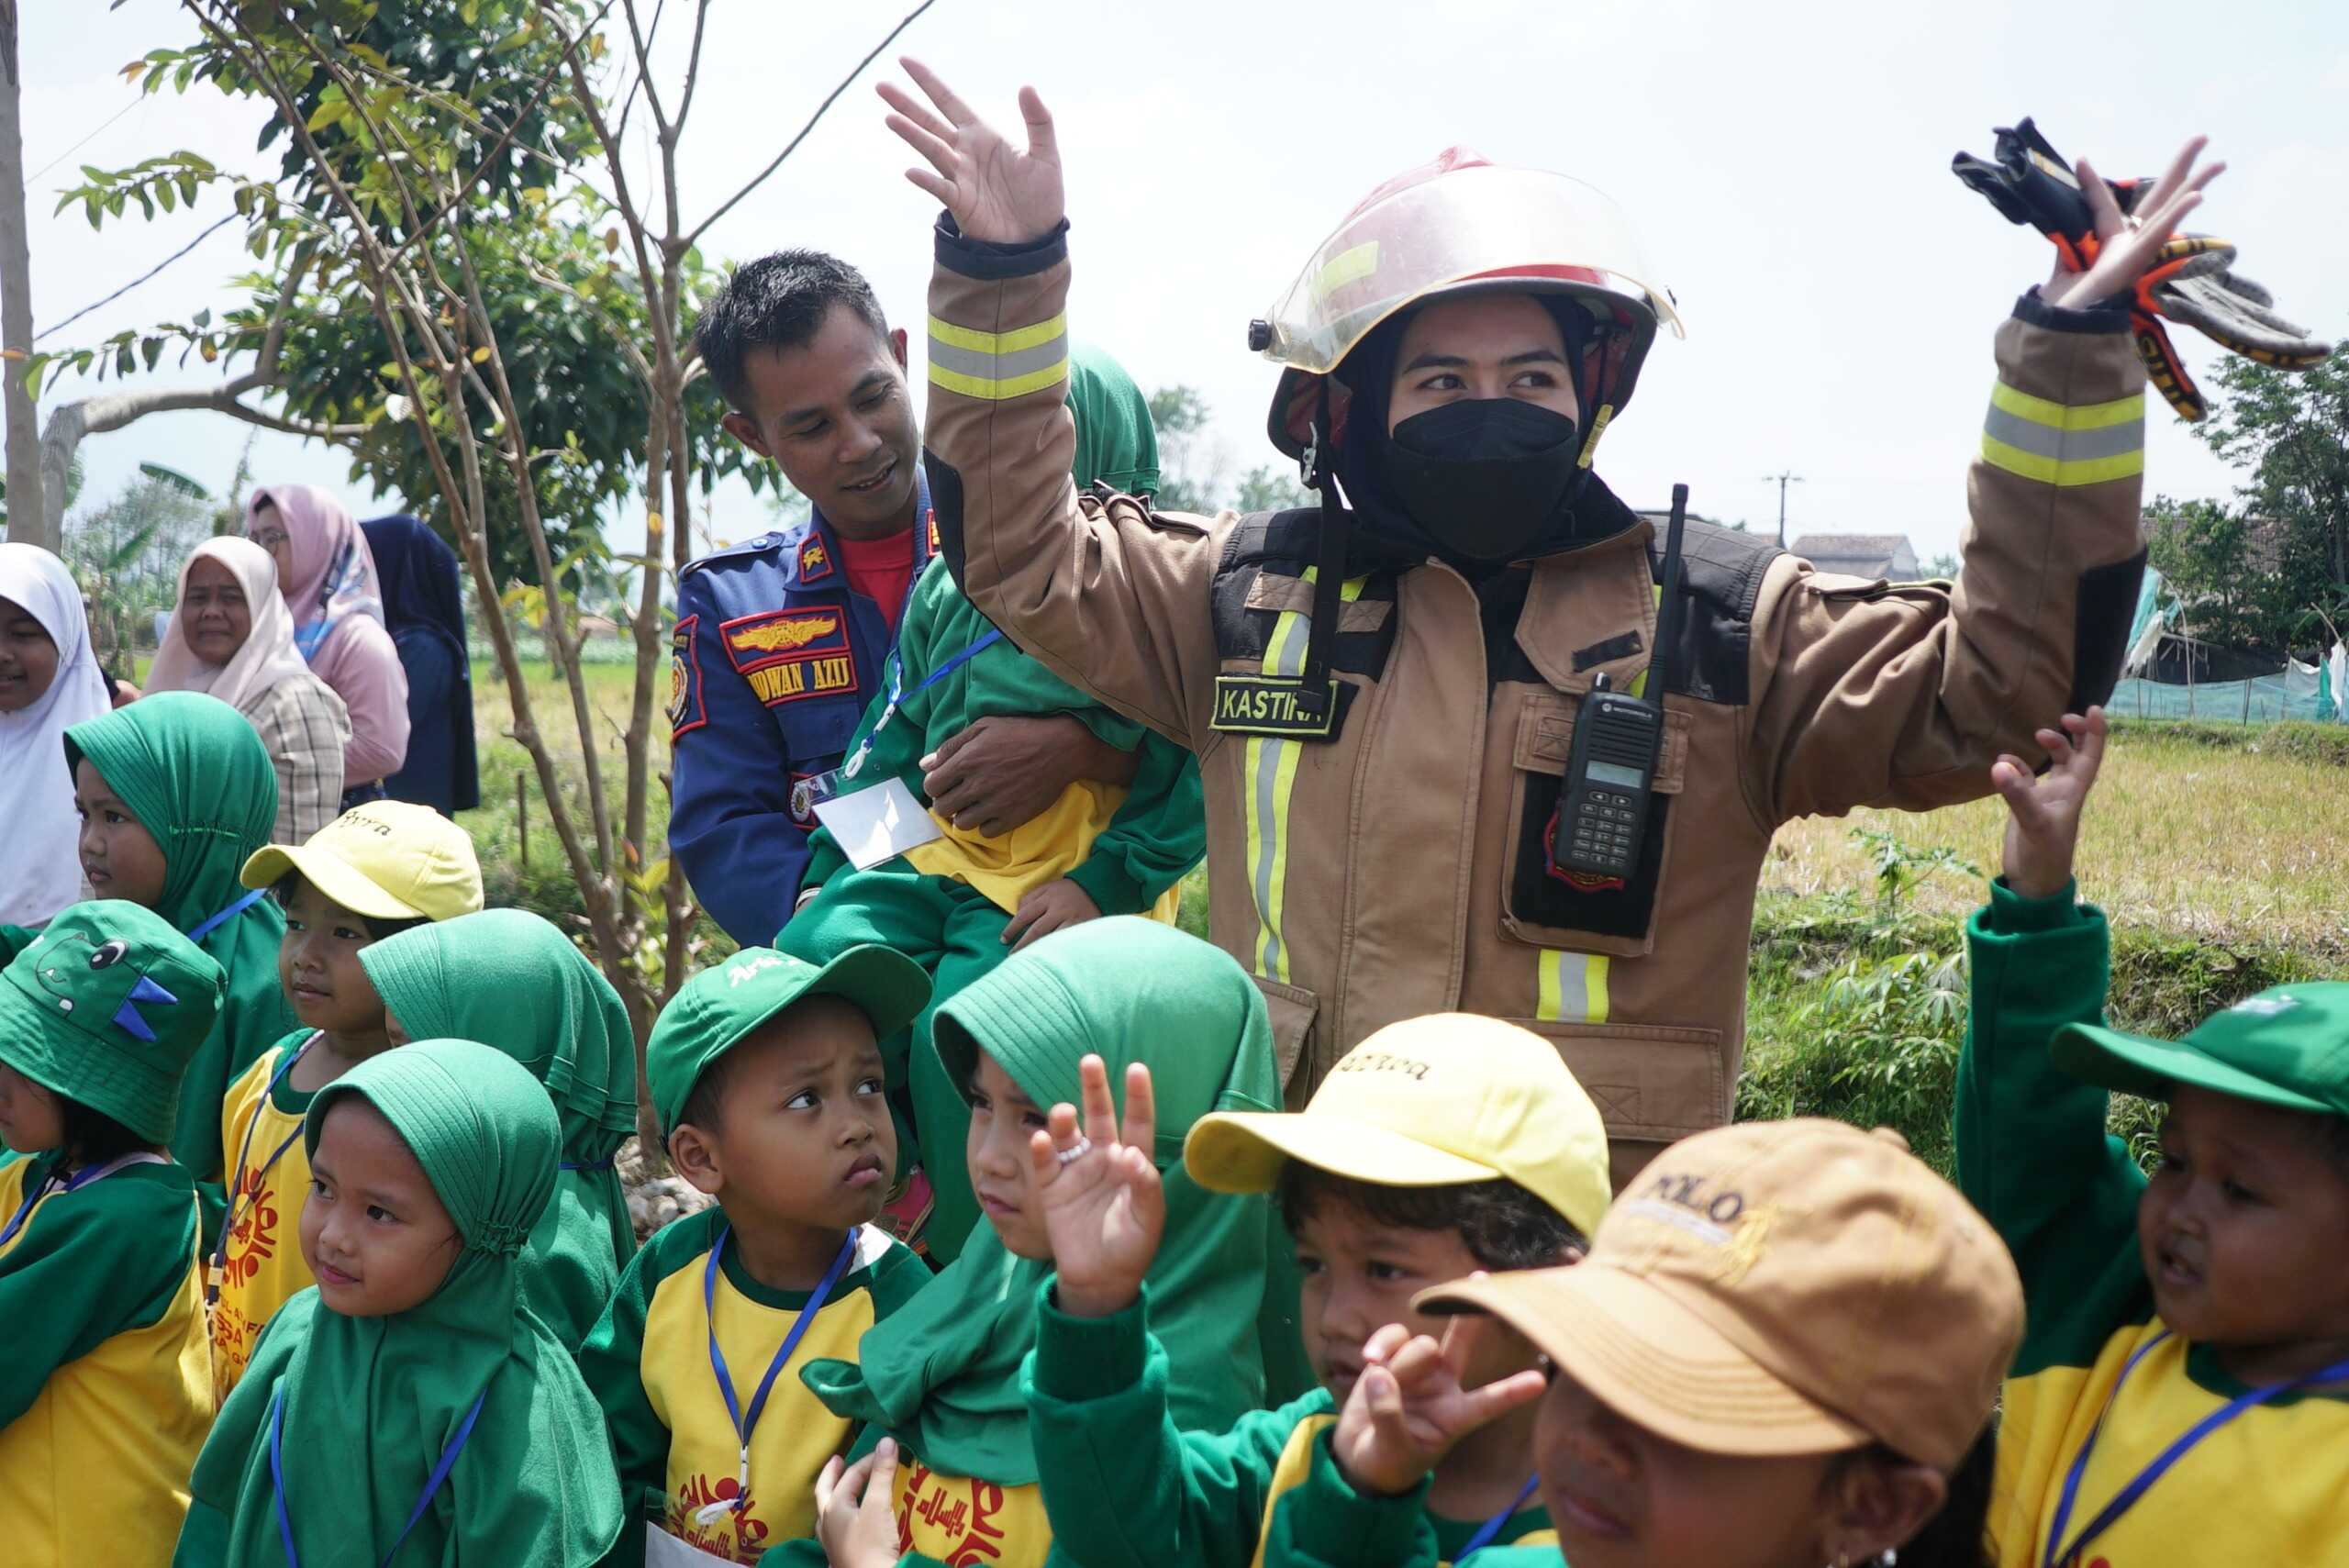 Program Outing Class di Wanaraja, Mengenalkan Pelajar TK Pada Profesi Pemdakar Kebakaran Hingga Masinis